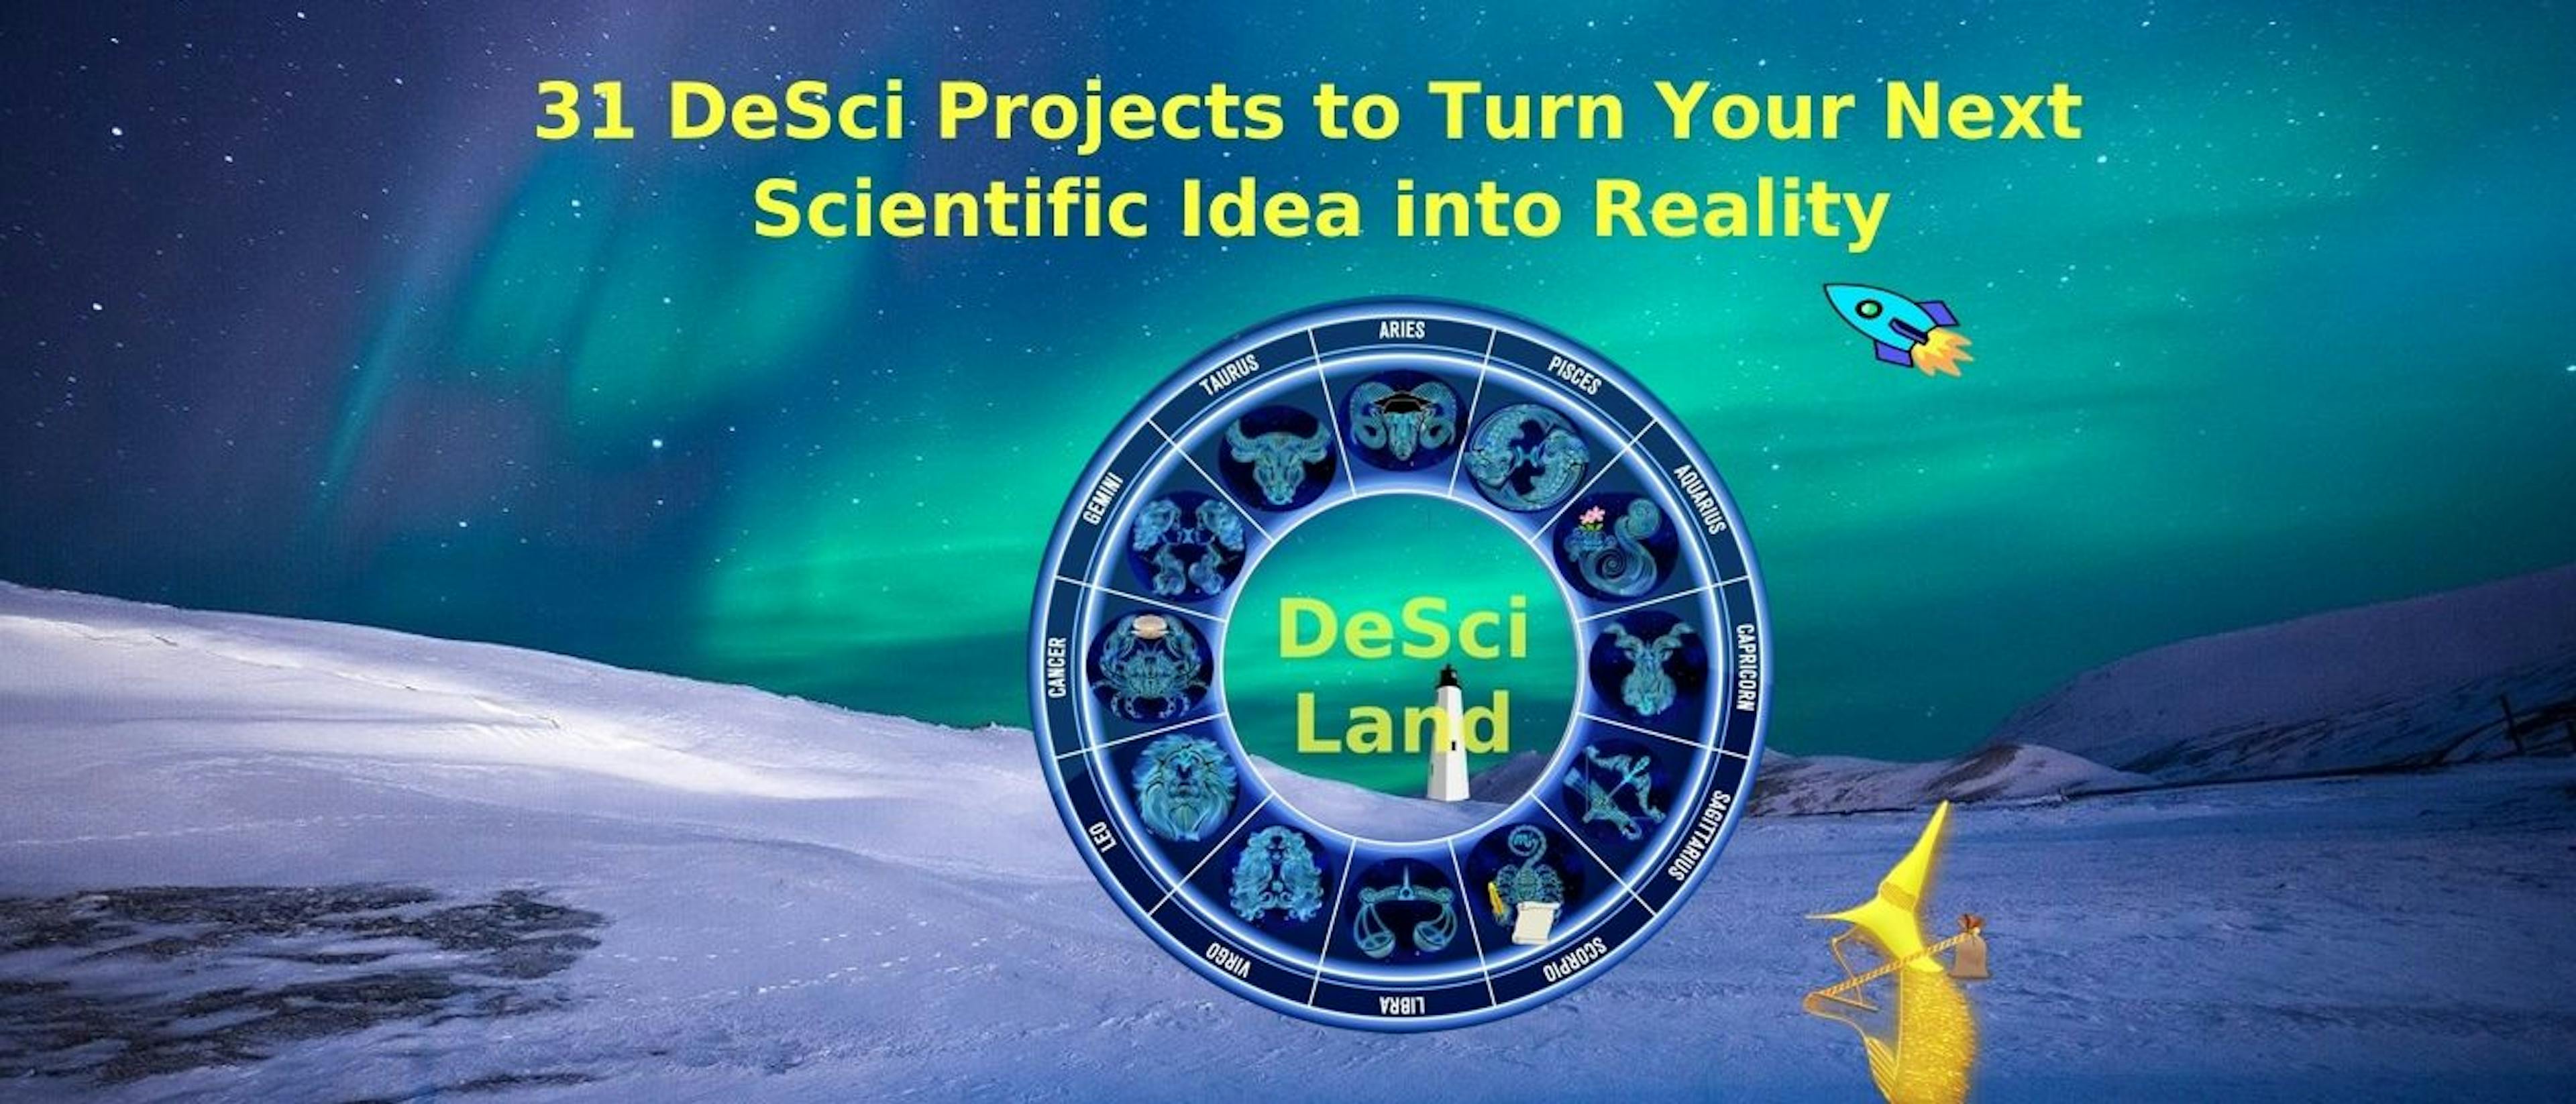 featured image - 31 proyectos DeSci para convertir su próxima idea científica en realidad